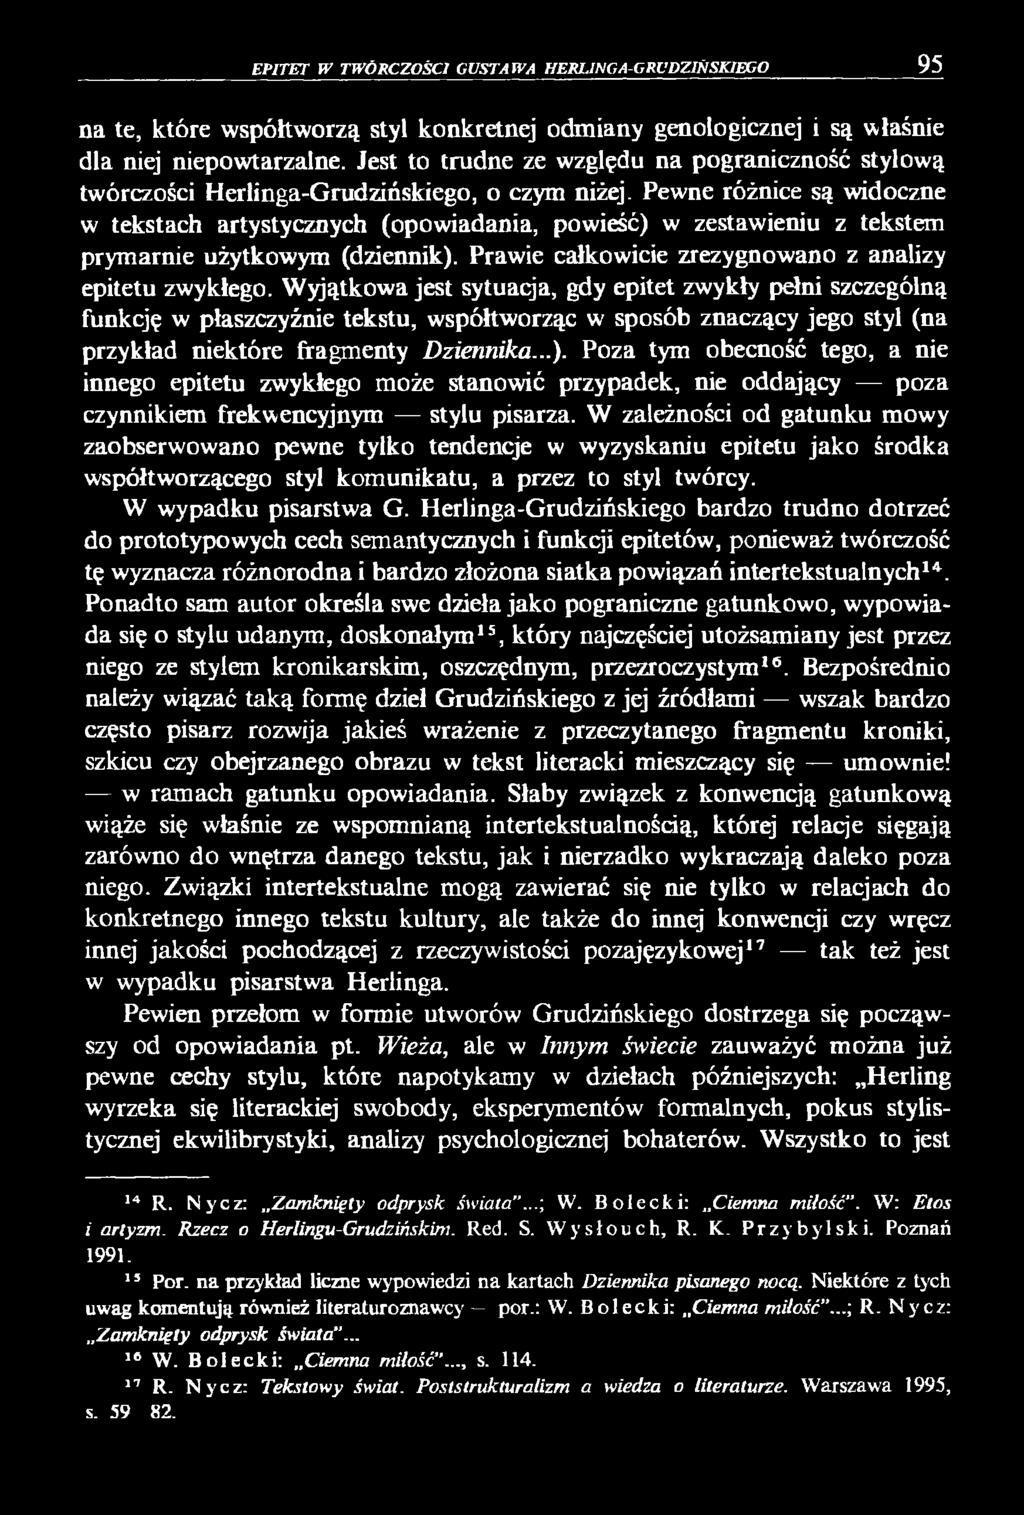 Artur Rejter Epitet w twórczości Gustawa Herlinga-Grudzińskiego. Język  Artystyczny 11, - PDF Darmowe pobieranie